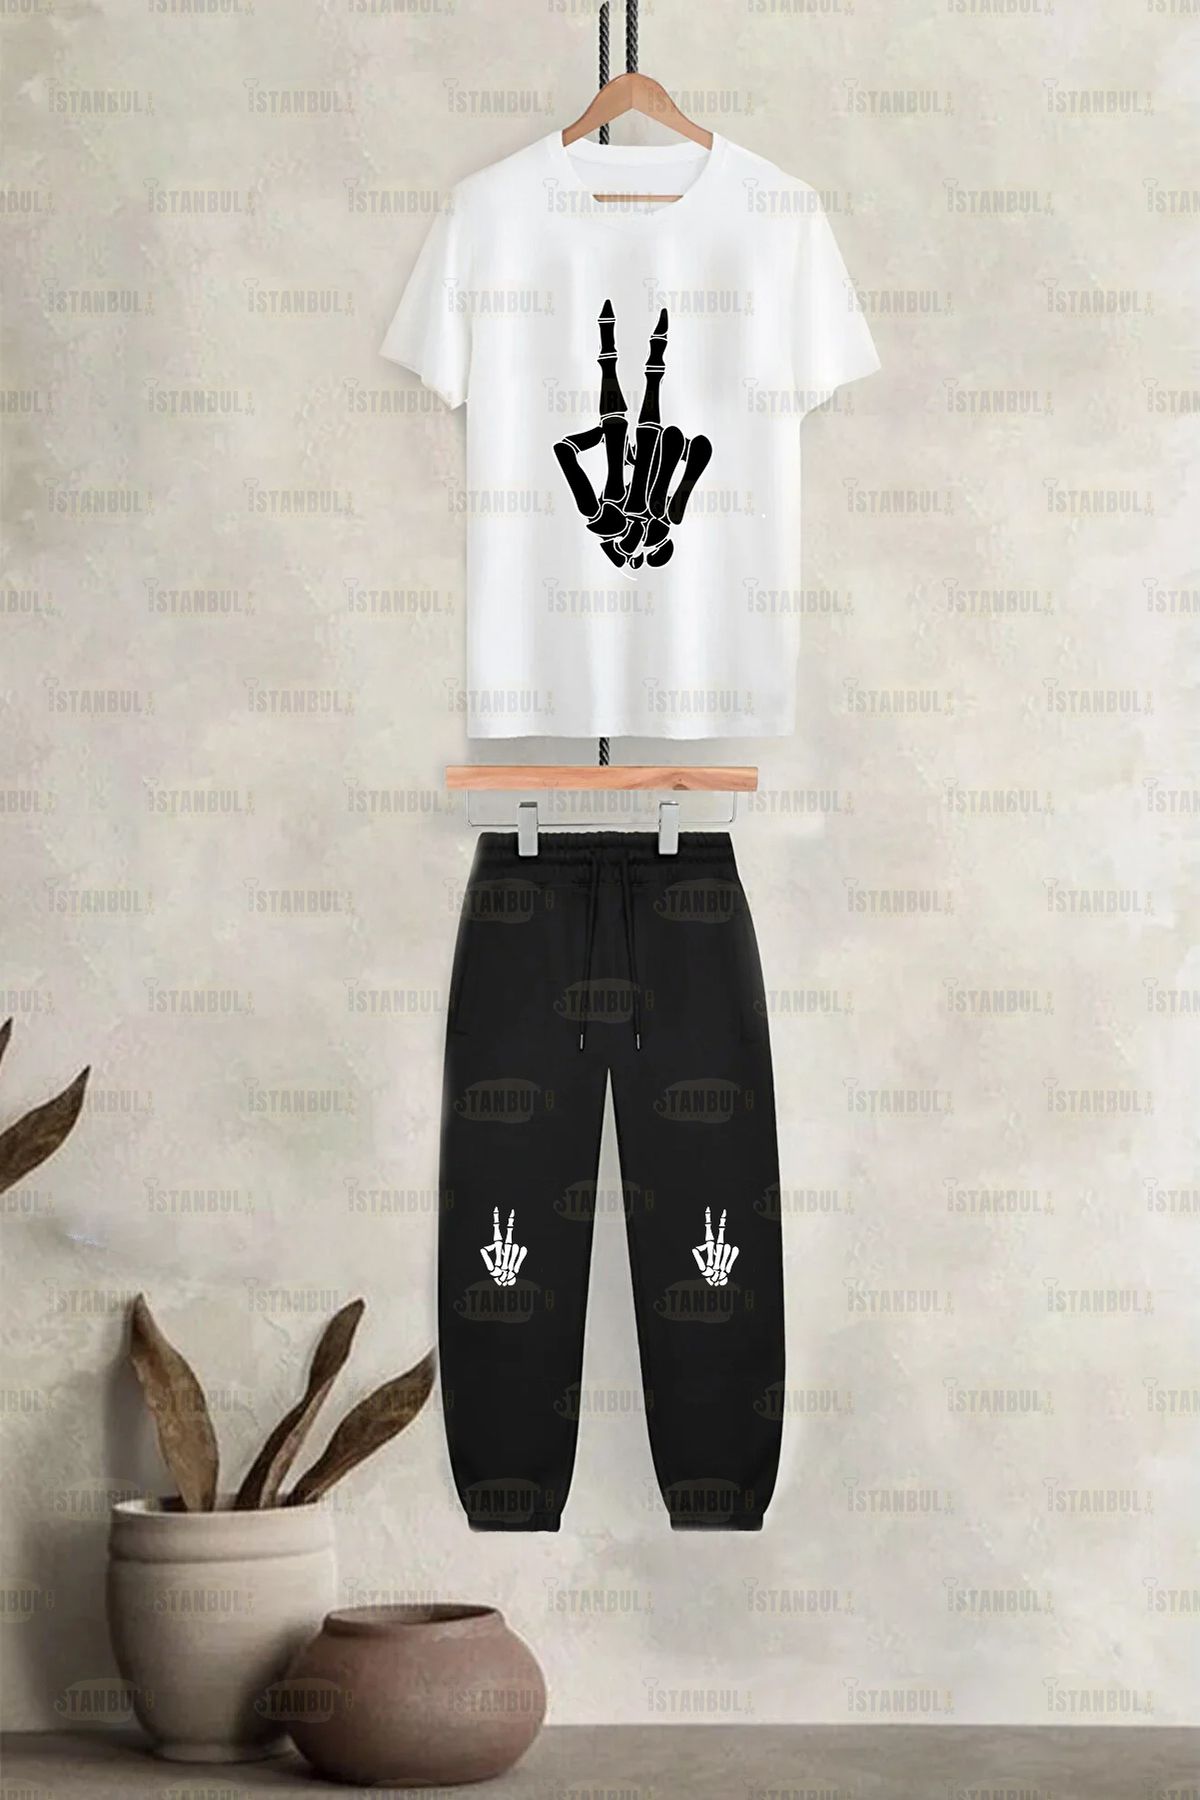 aynewmoda İskelet el barış işareti - Skeleton hand pease sign Baskılı T-shirt Eşofman Alt Üst Takımı